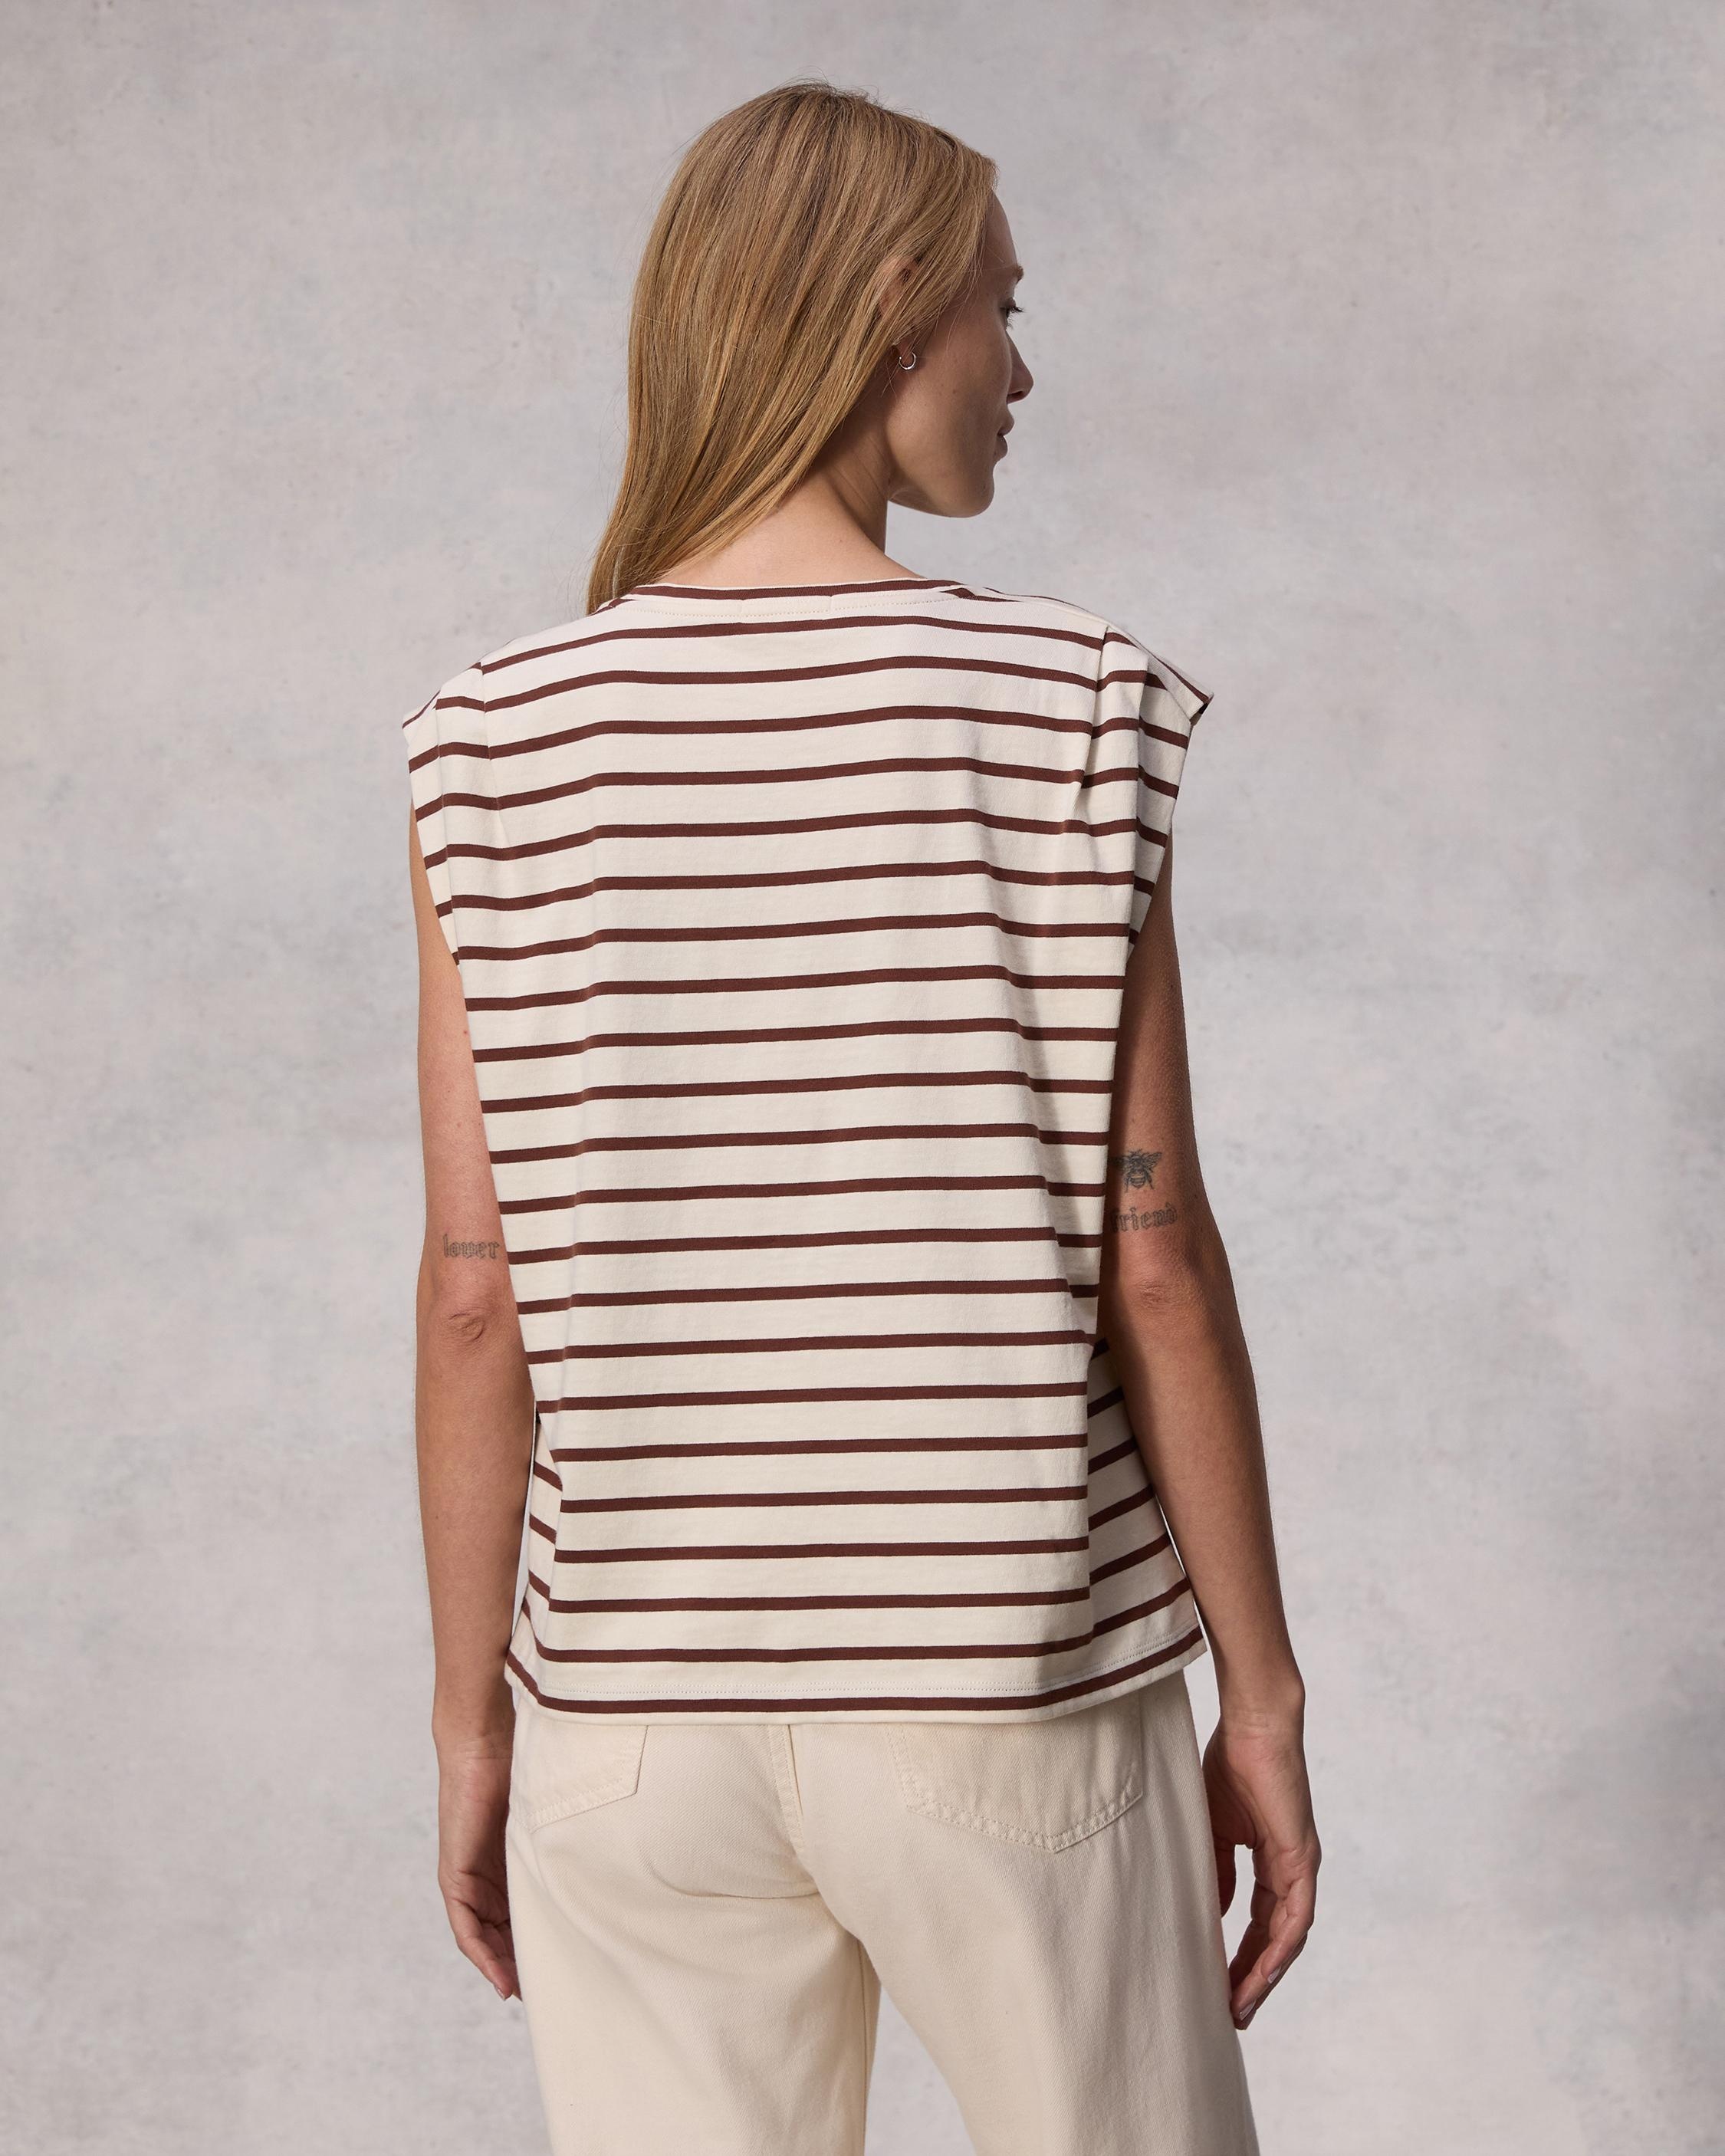 Mica Striped Tank
Cotton T-Shirt - 5